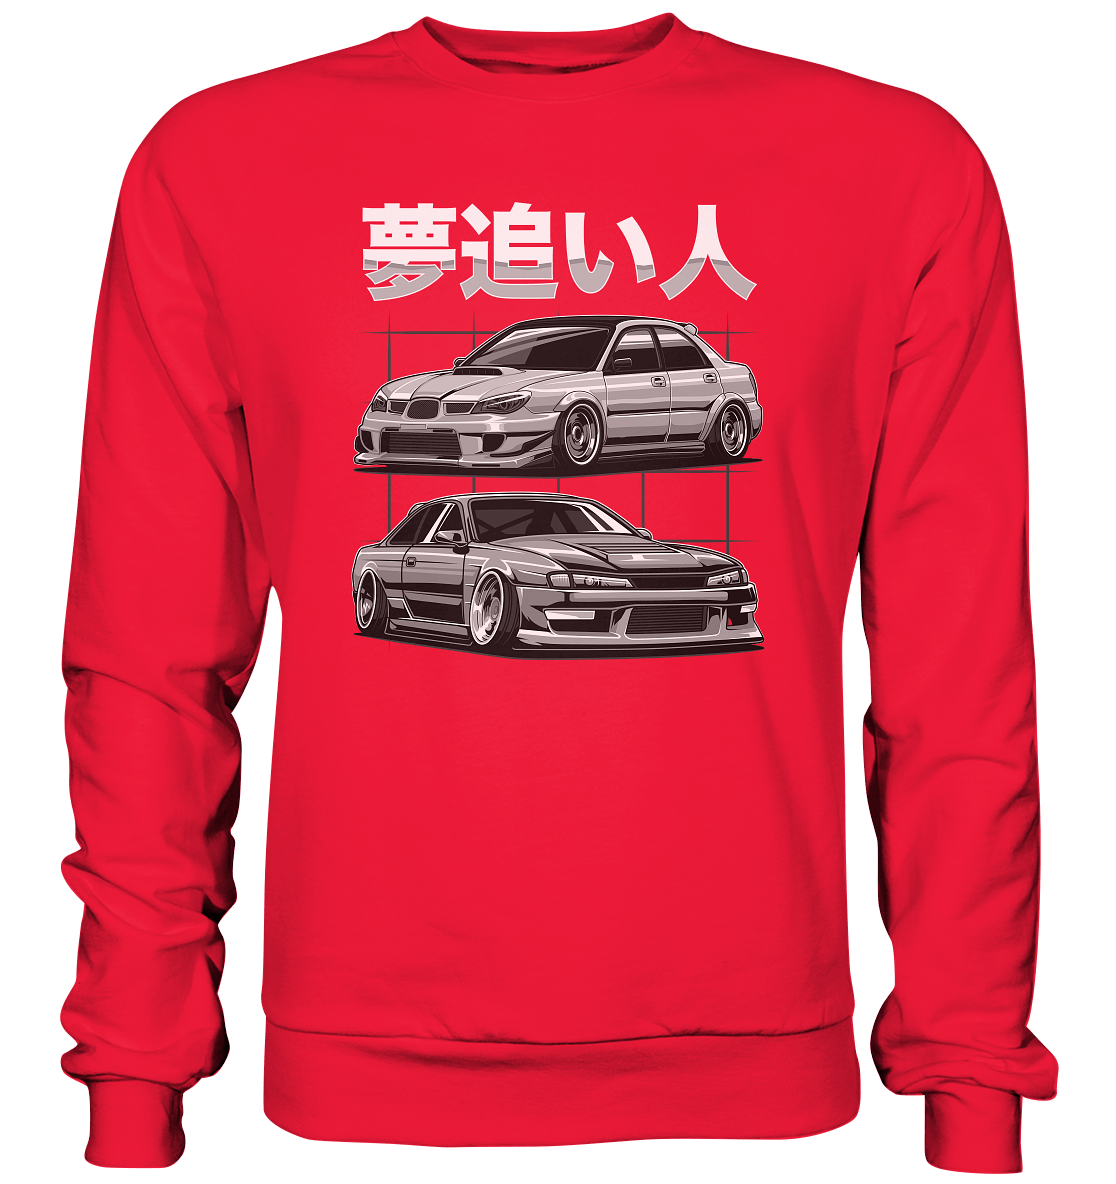 Impreza vs. Silvia - Premium Sweatshirt - MotoMerch.de